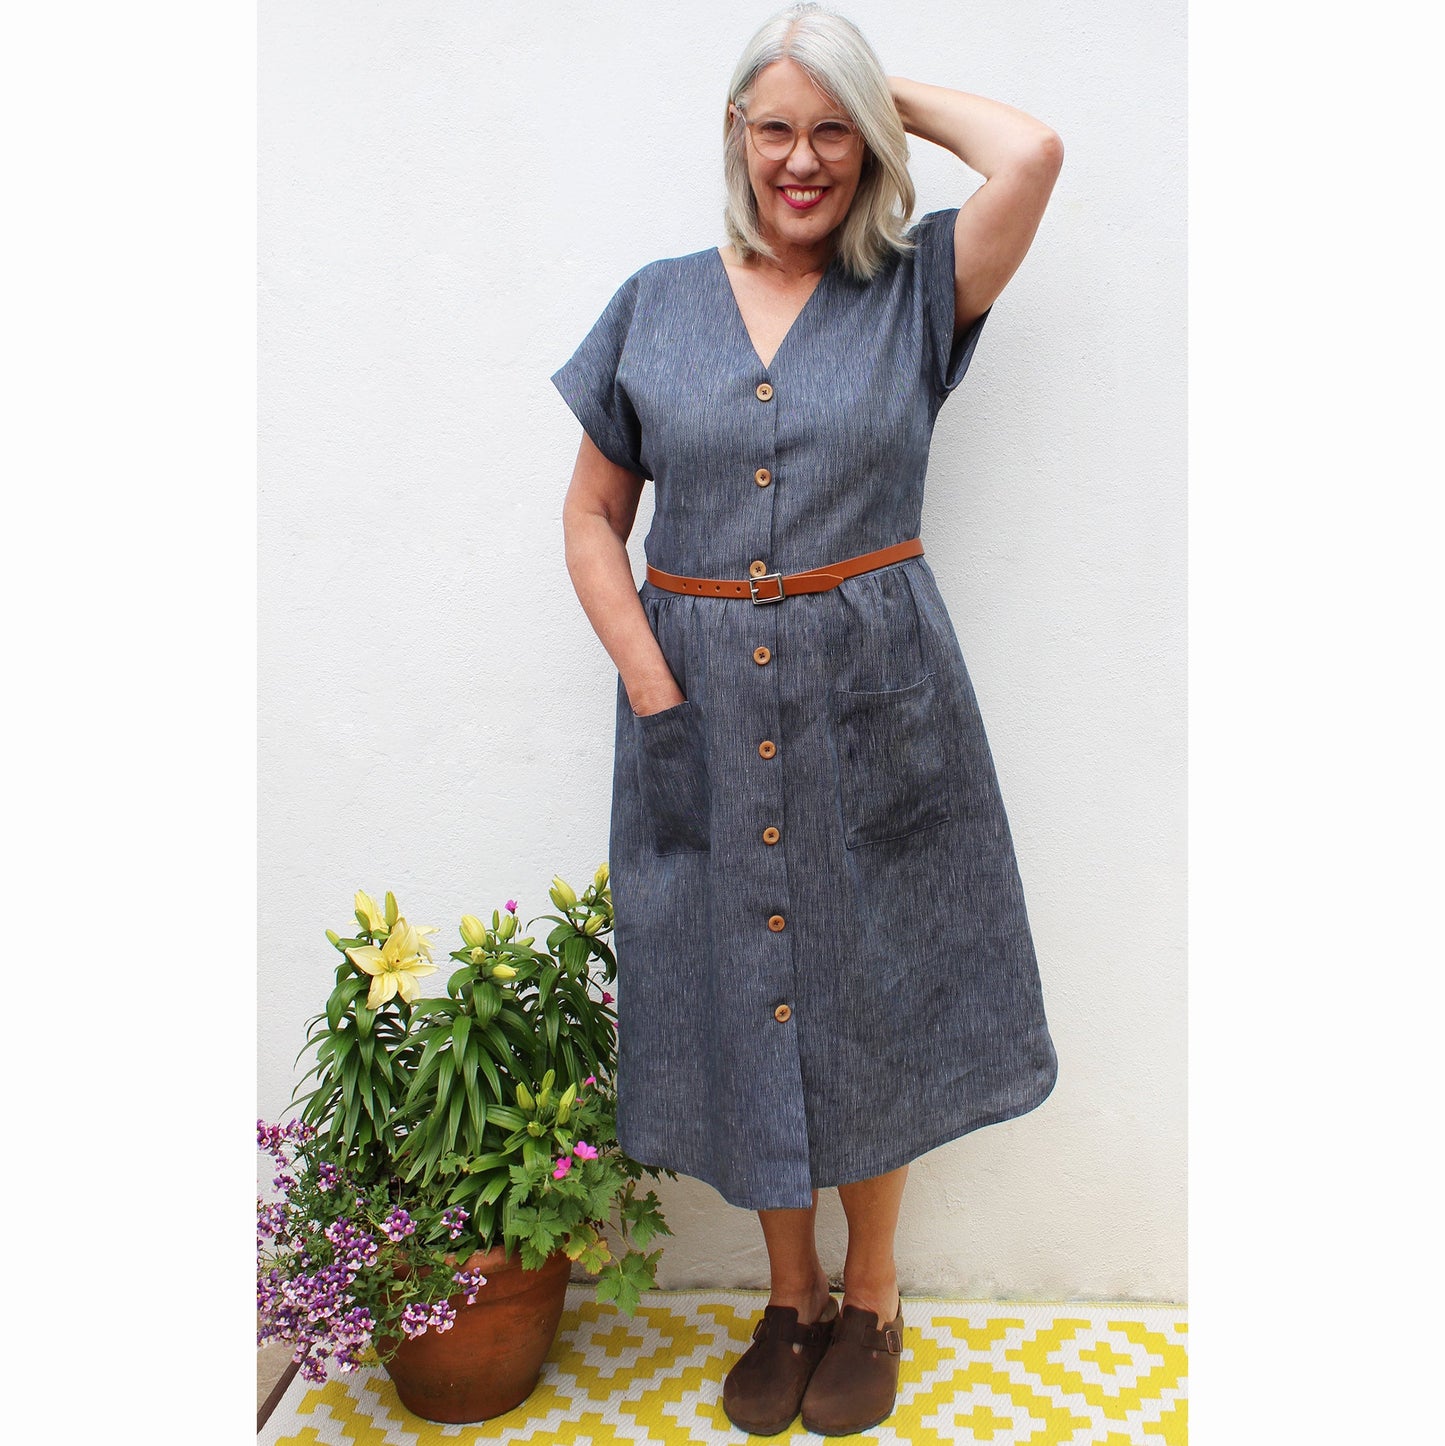 BETTY DRESS sewing pattern